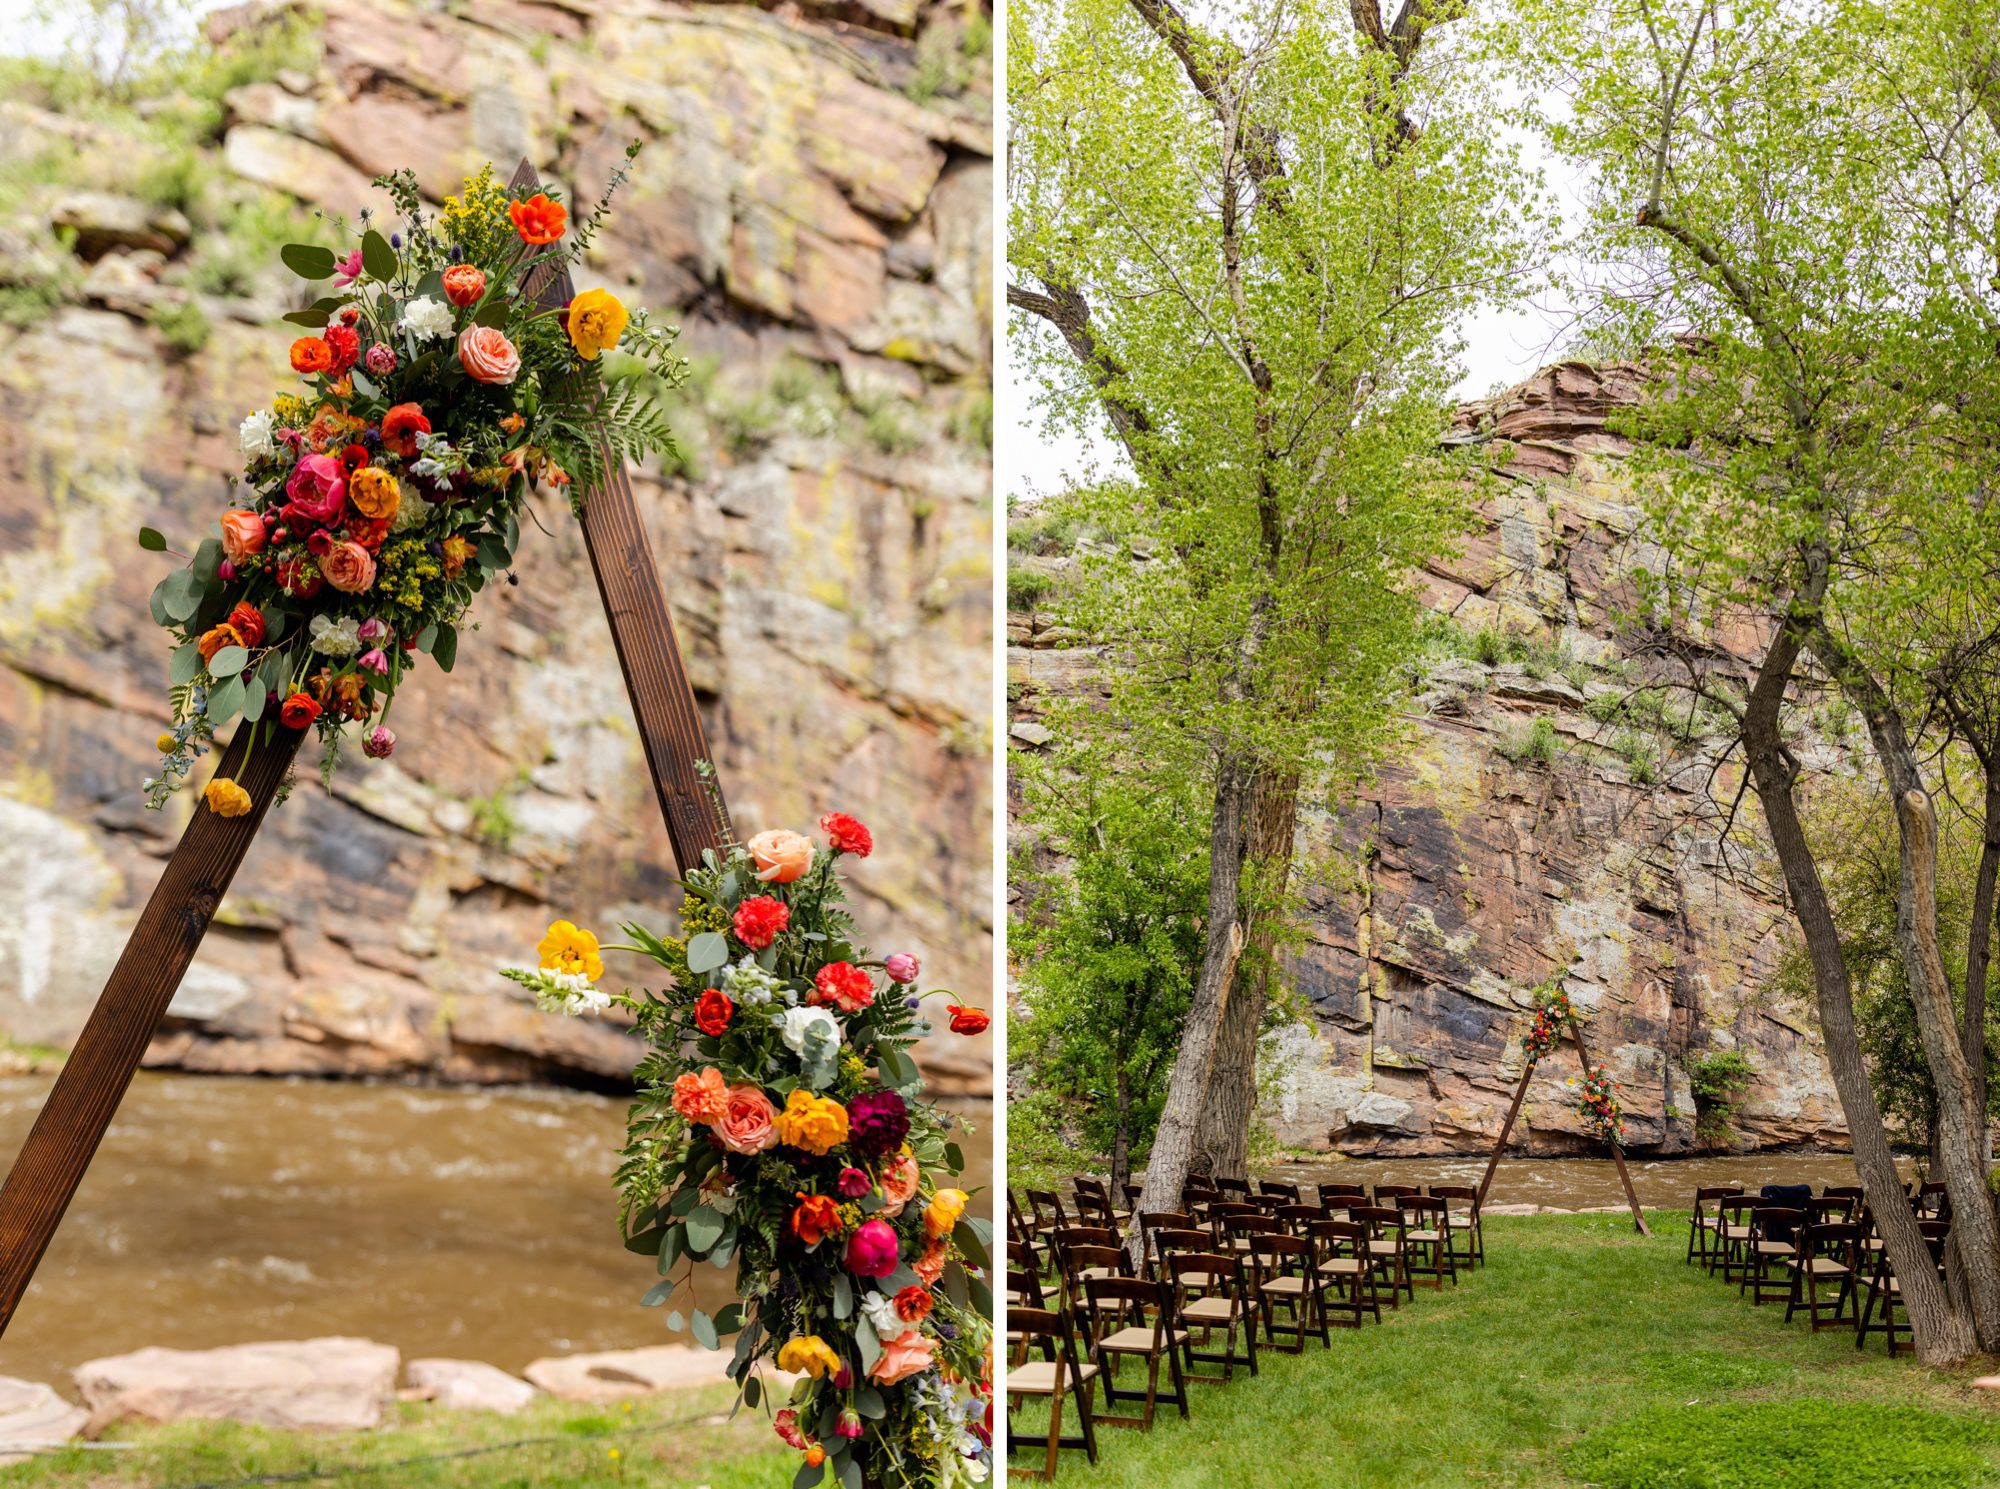 Planet Bluegrass Wedding venue in Lyons Colorado: Colorado Wedding Photographer, Wedding ceremony decor, Triangle wedding altar, Triangle arch, Floral wedding arch